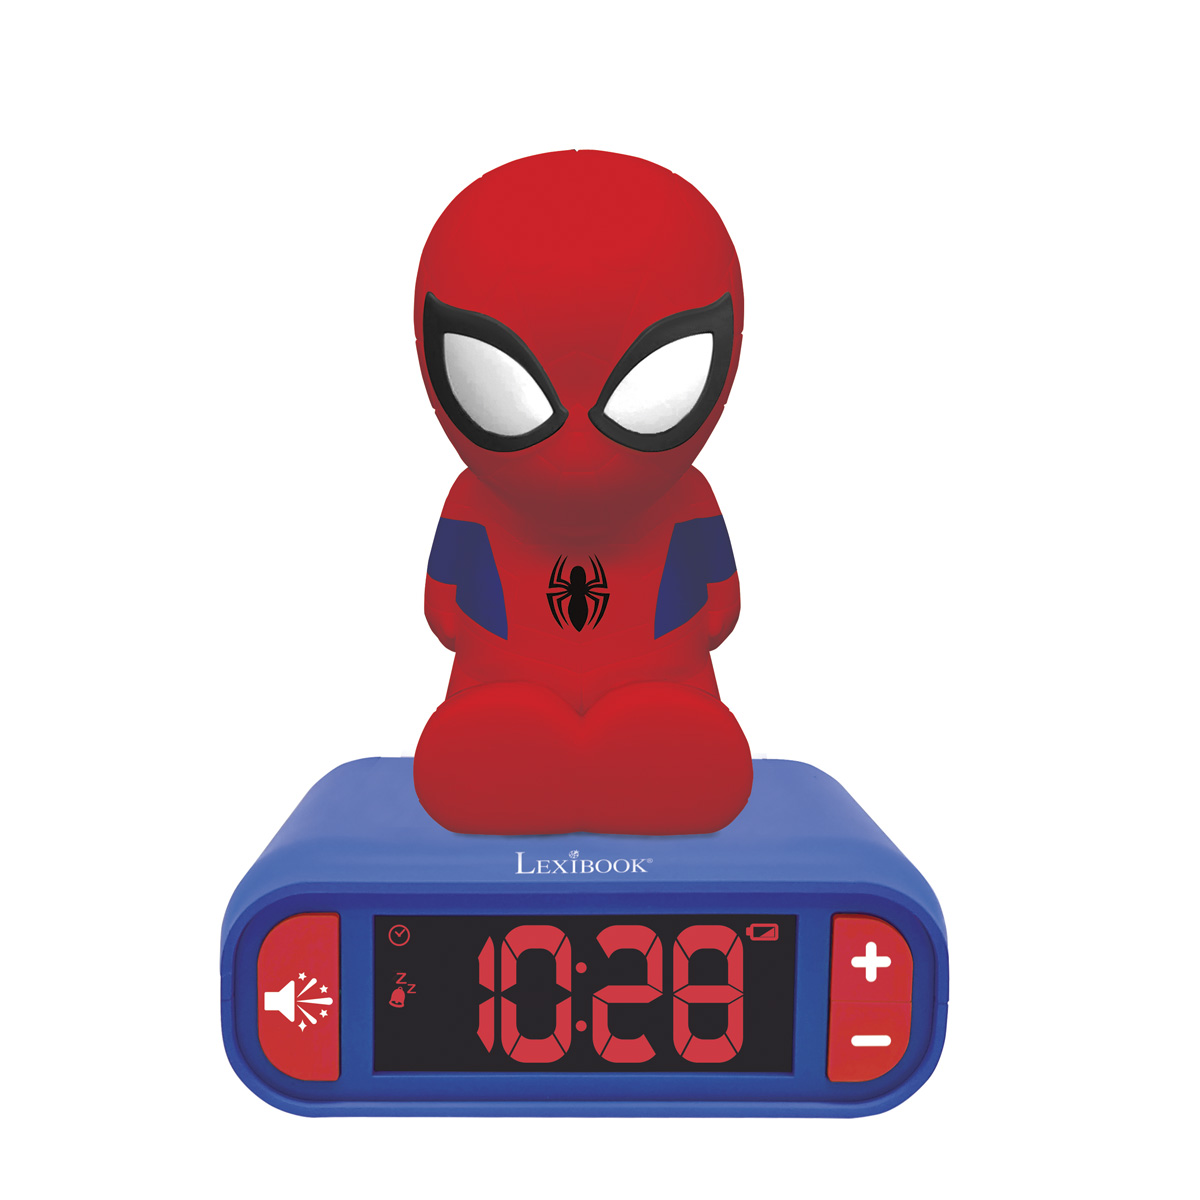 LEXIBOOK Spider-Man mit Nachtlicht 3D Wecker